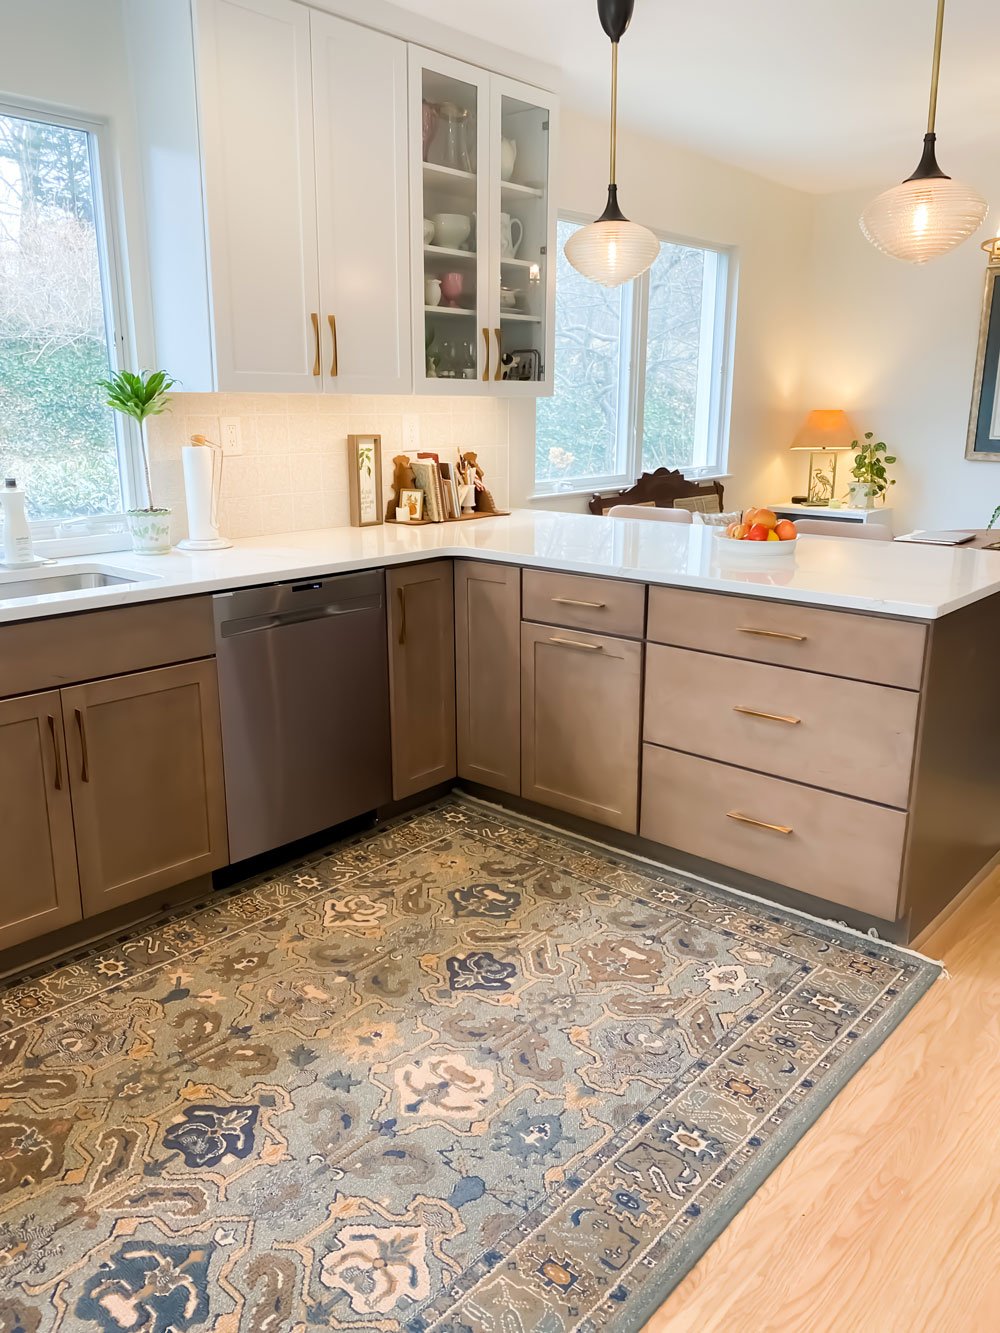 Corner kitchen countertops with hardwood flooring